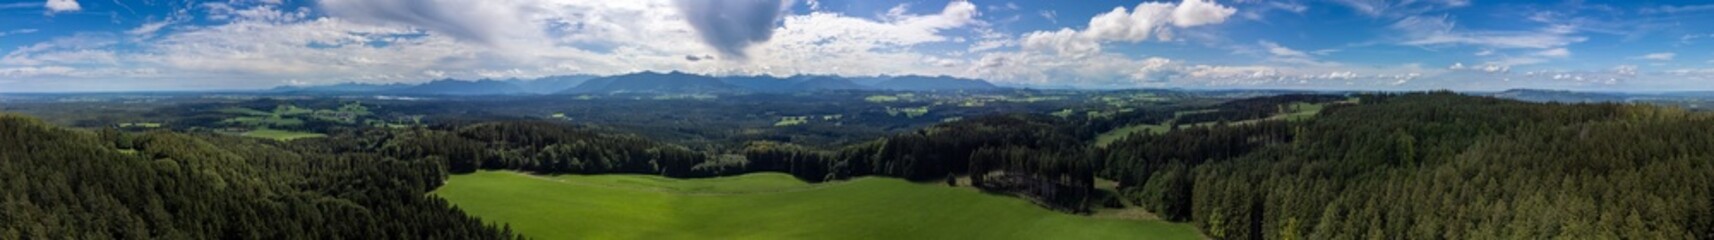 Bayern, Voralpenland, Panorama, 360 Grad, Wolken, Drohnenpanorama, Drohne, Himmel, Oberbayern, Alpen, Alpenblick